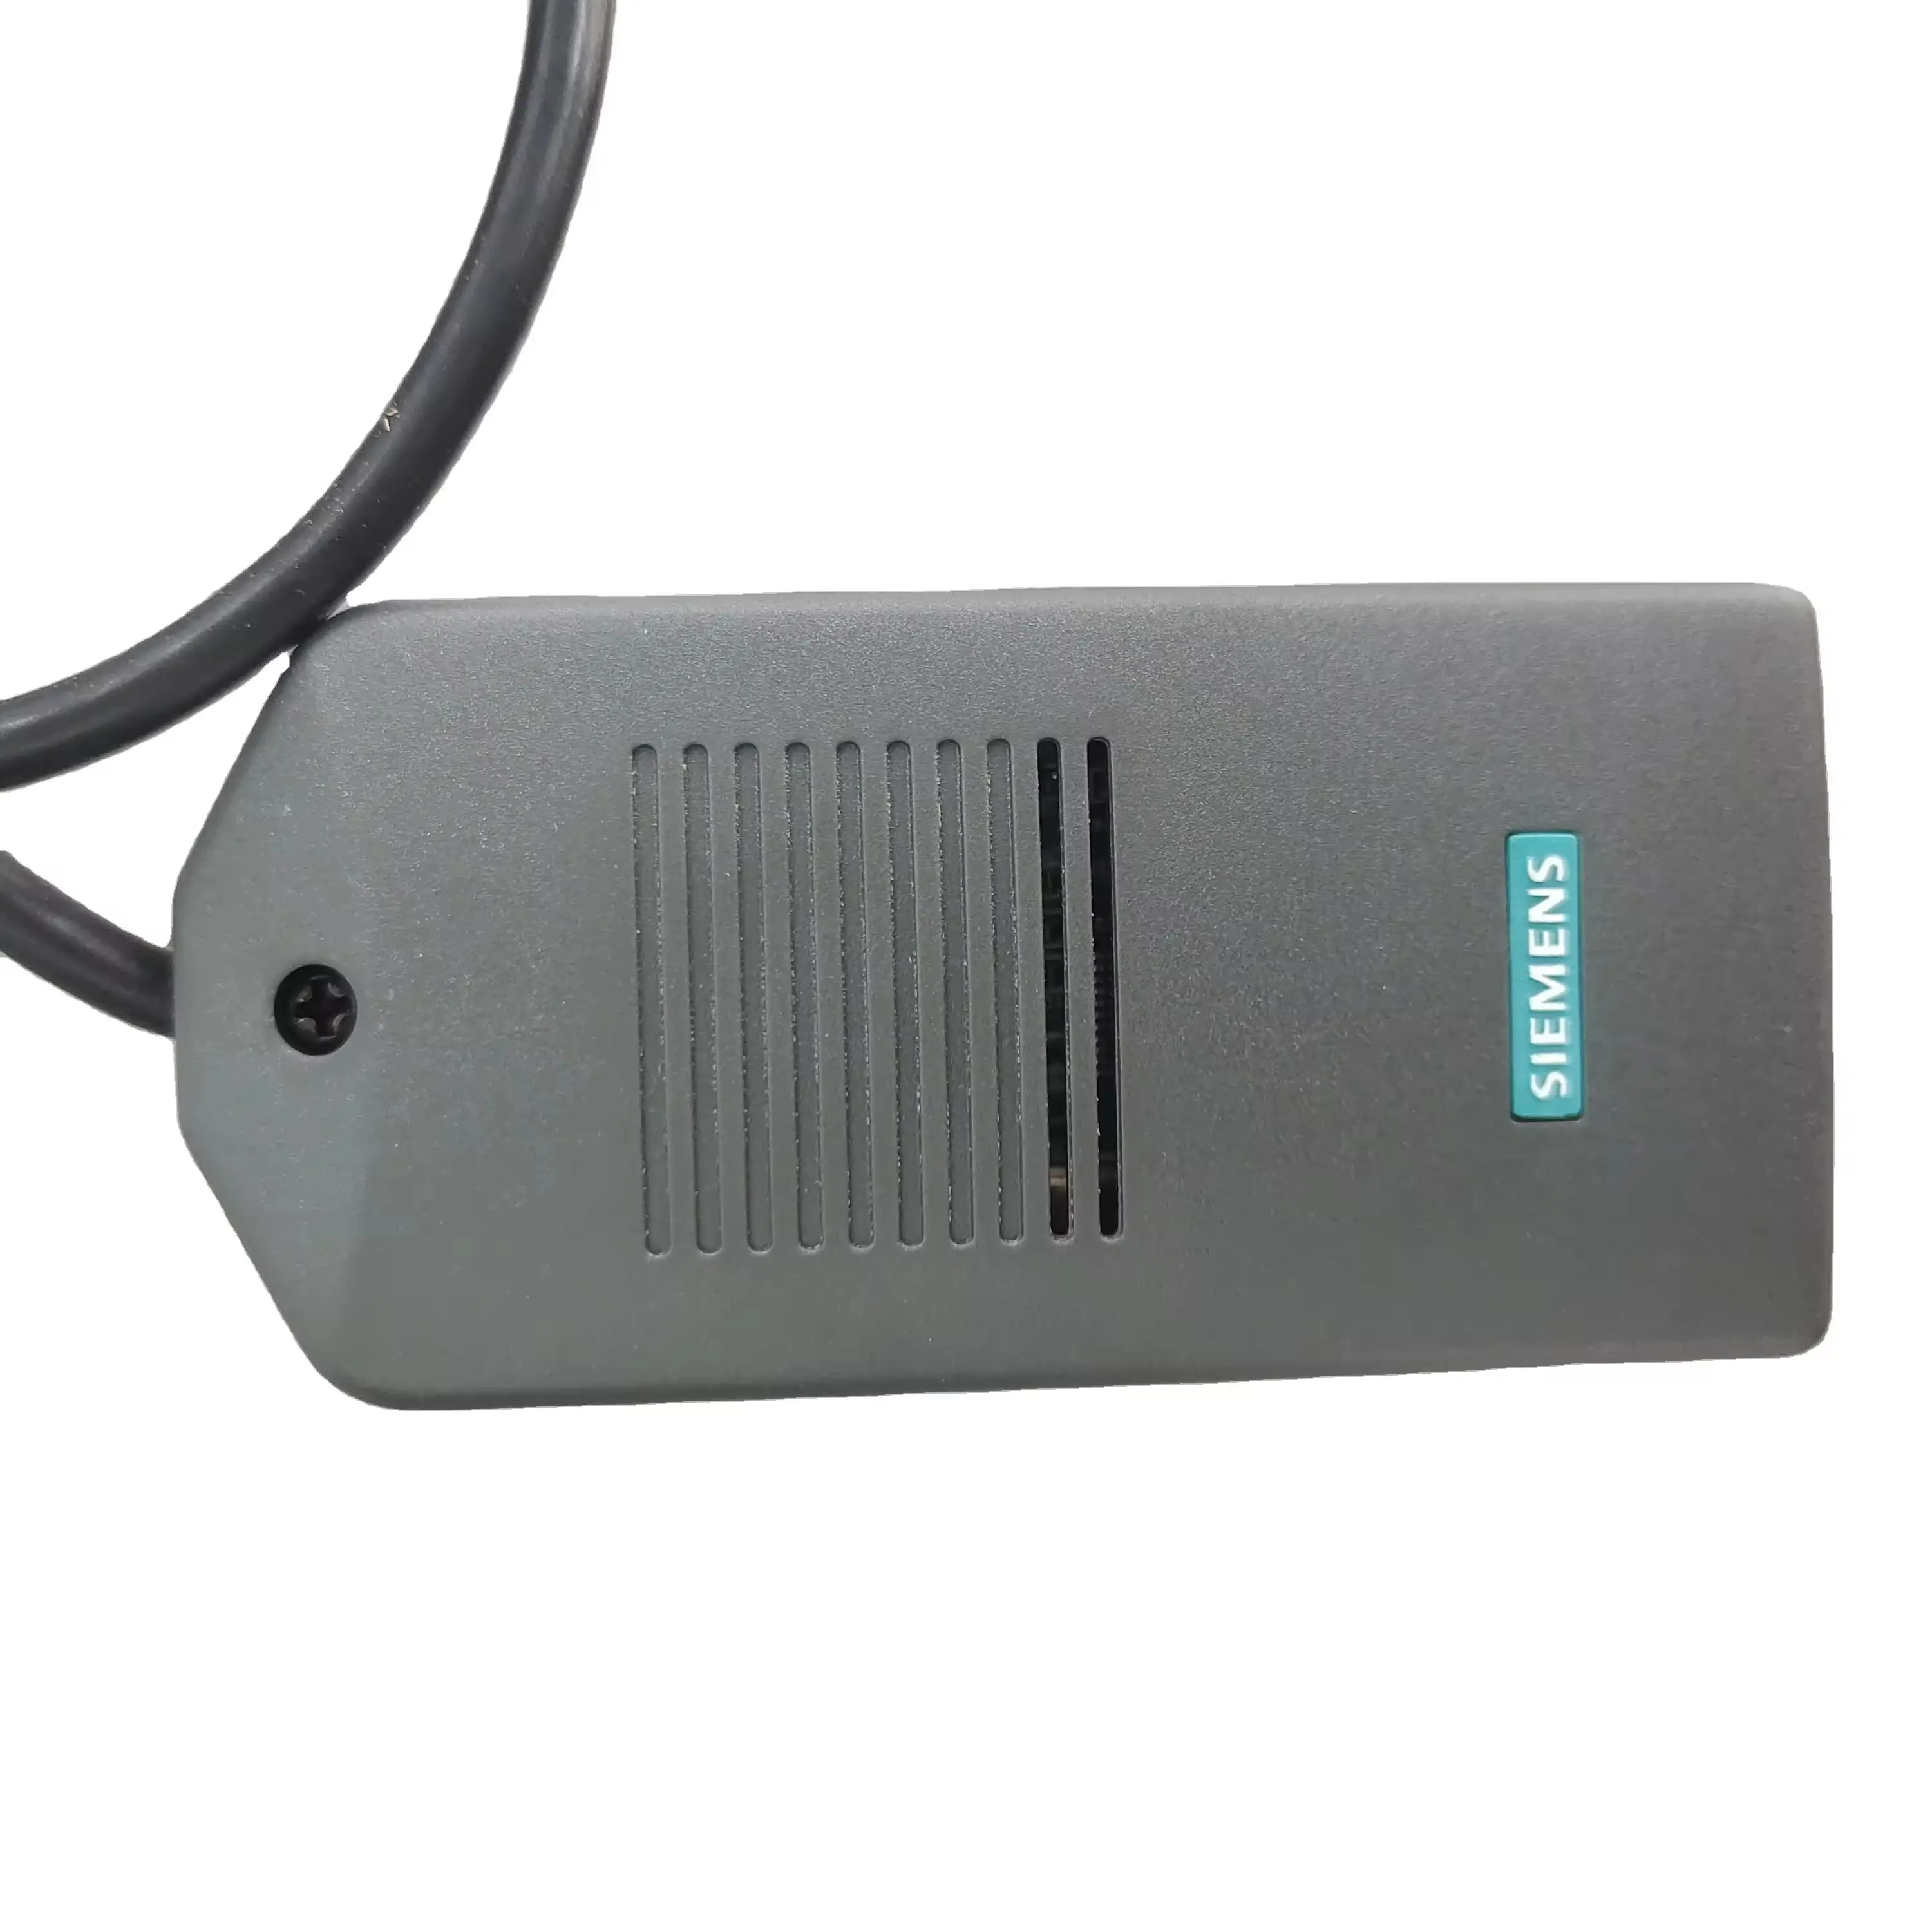 Câble USB adaptateur PC d'origine 6ES7972-0CB20-0XA0 pour Siemens S7-200/300/400 RS485 Profibus MPI/PPI 9 broches